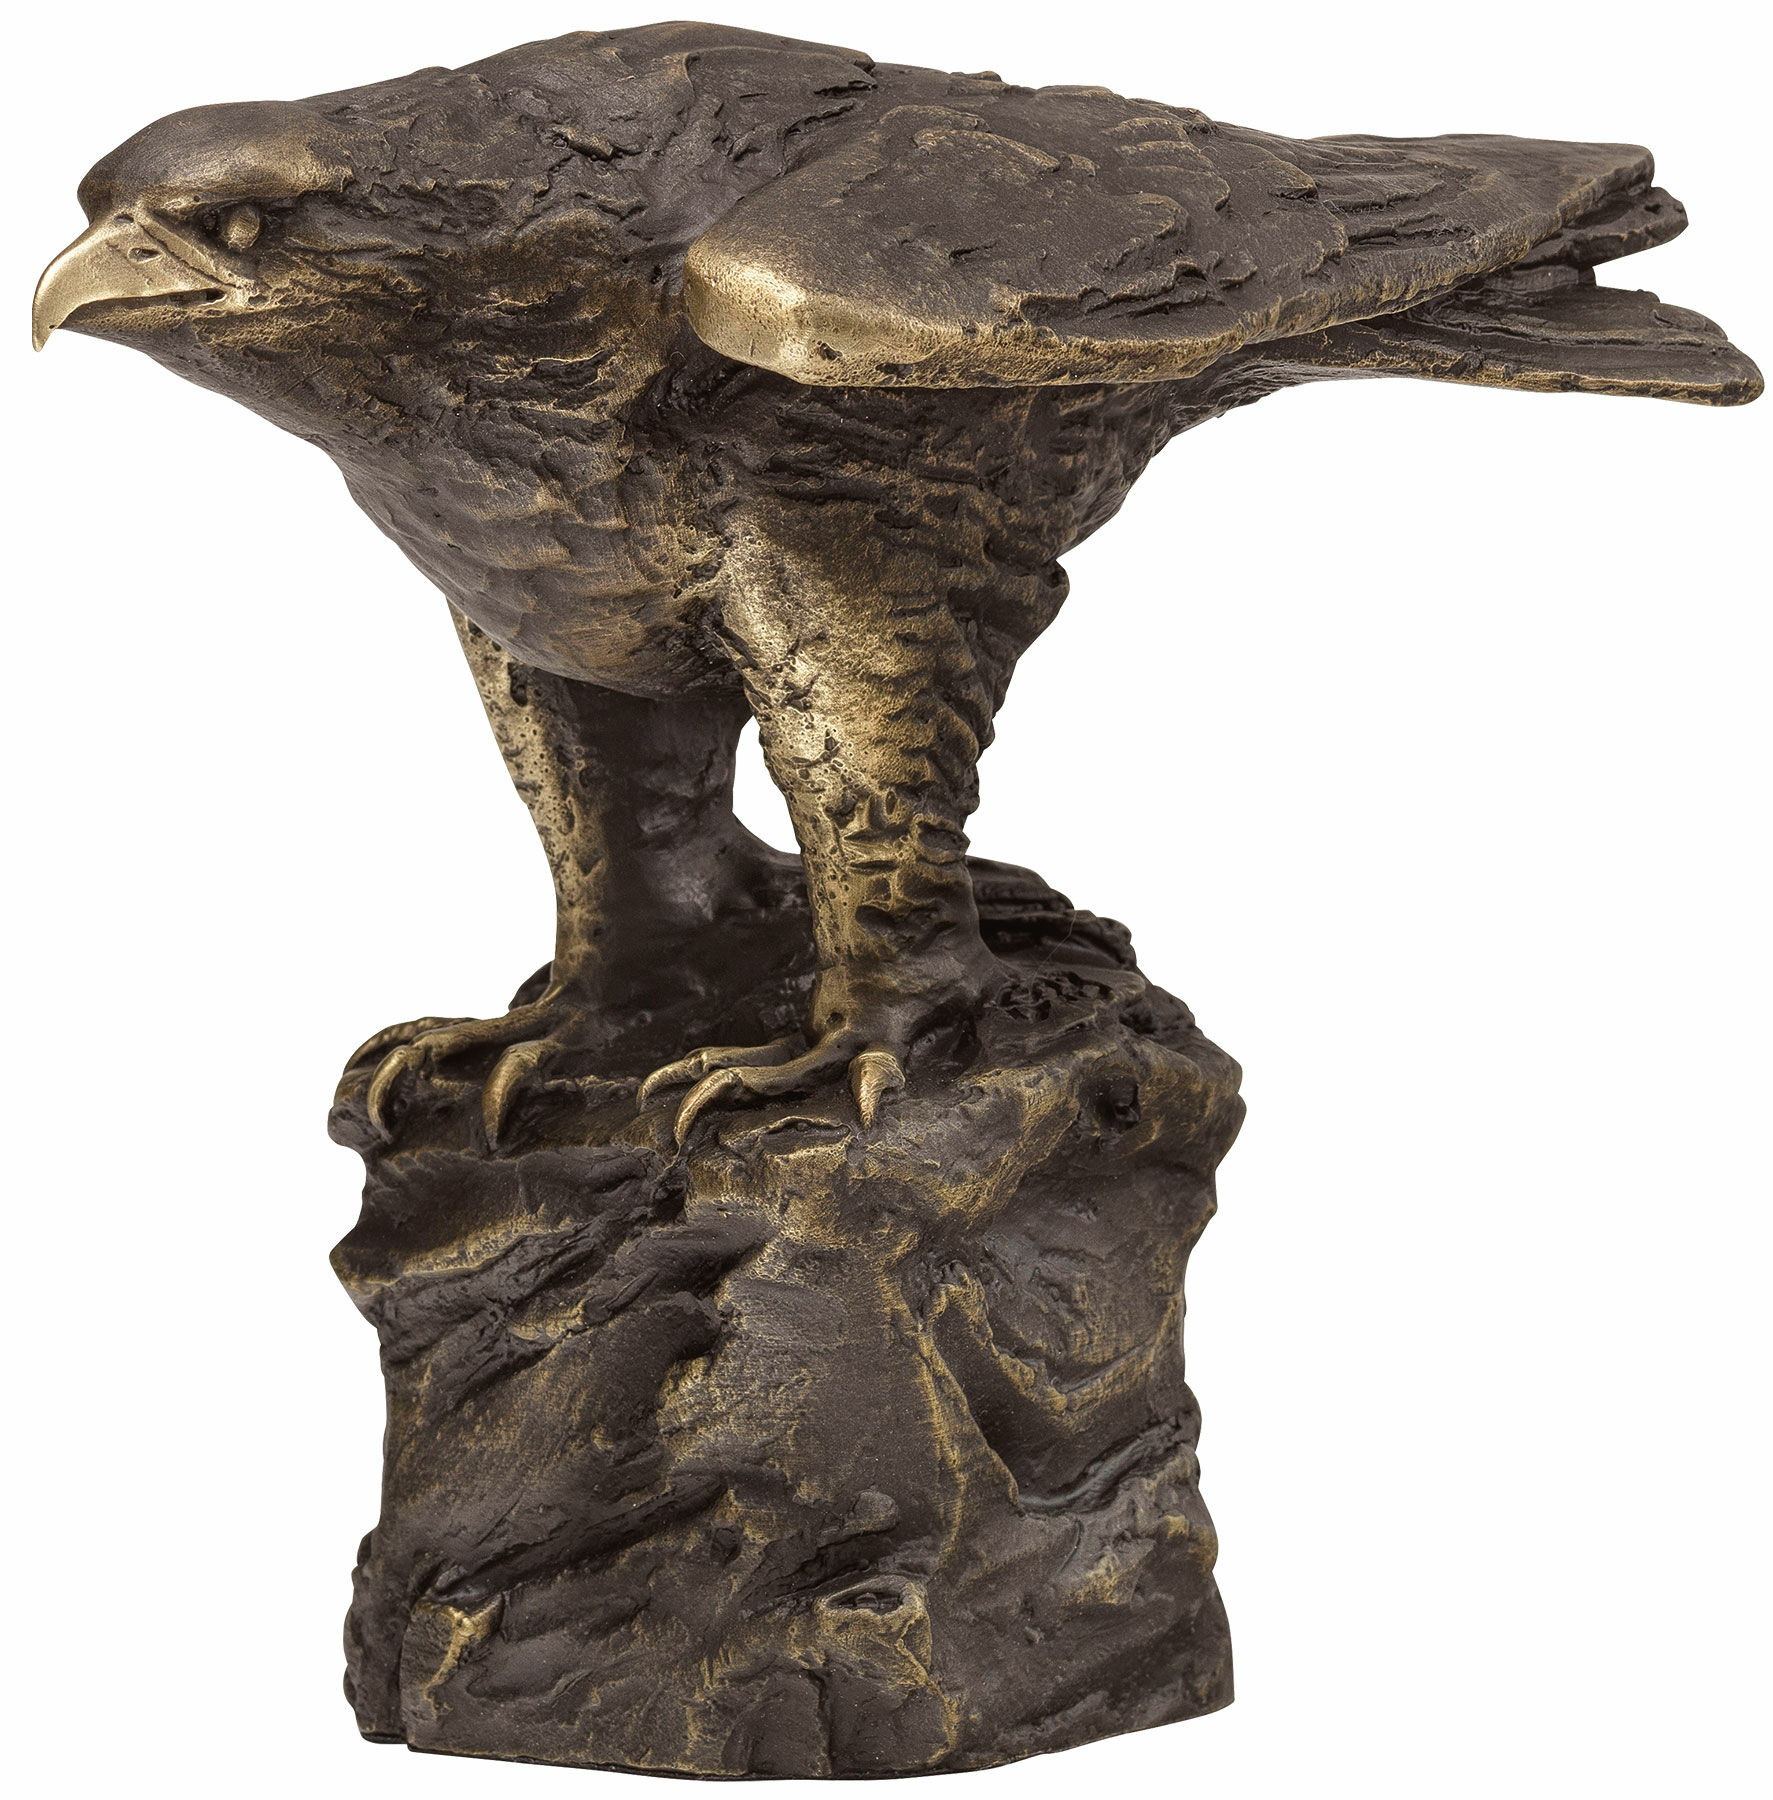 Sculpture "Eagle", bronze by Erwin A. Schinzel